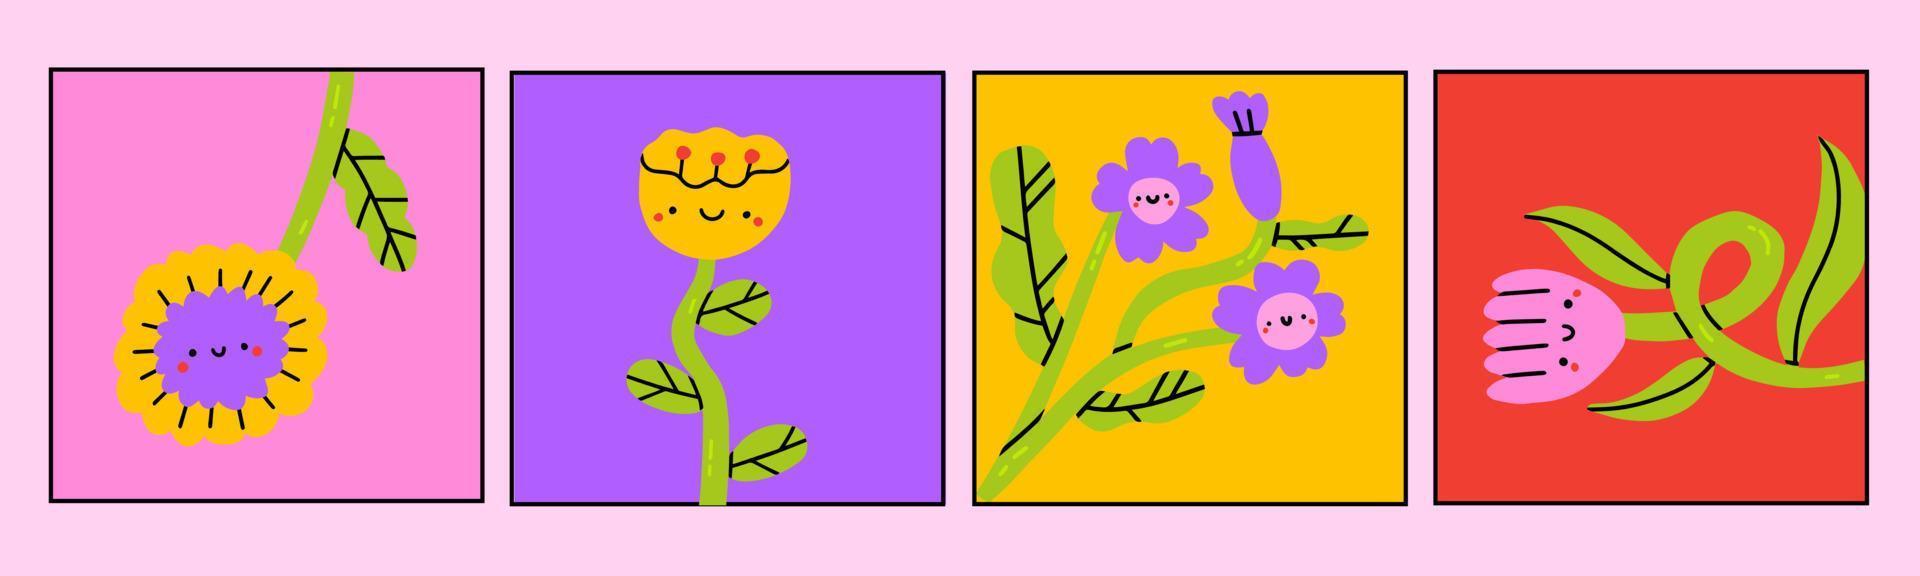 abstrakt enkel växter och blommor med ögon. hand dragen färgad vektor uppsättning. blommig design, naiv konst, infantil stil konst. färgrik trendig illustration. förhandsgjord kort eller grafik